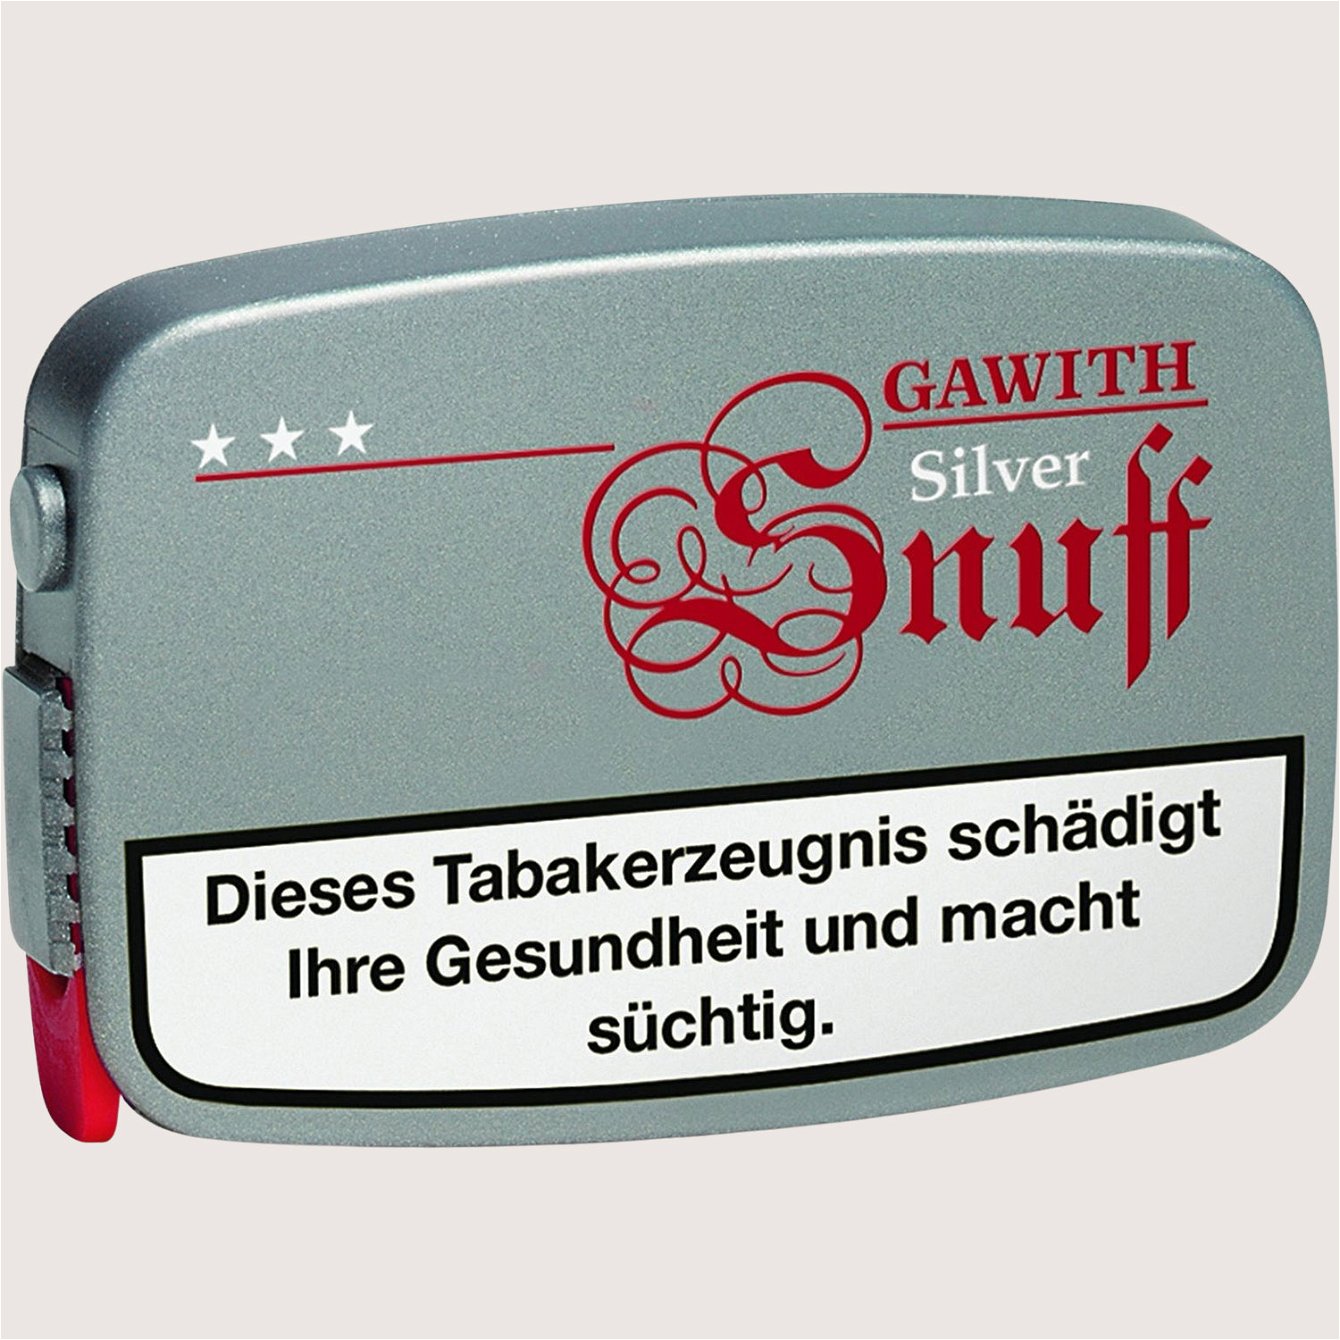 Pöschl Gawith Silver Snuff